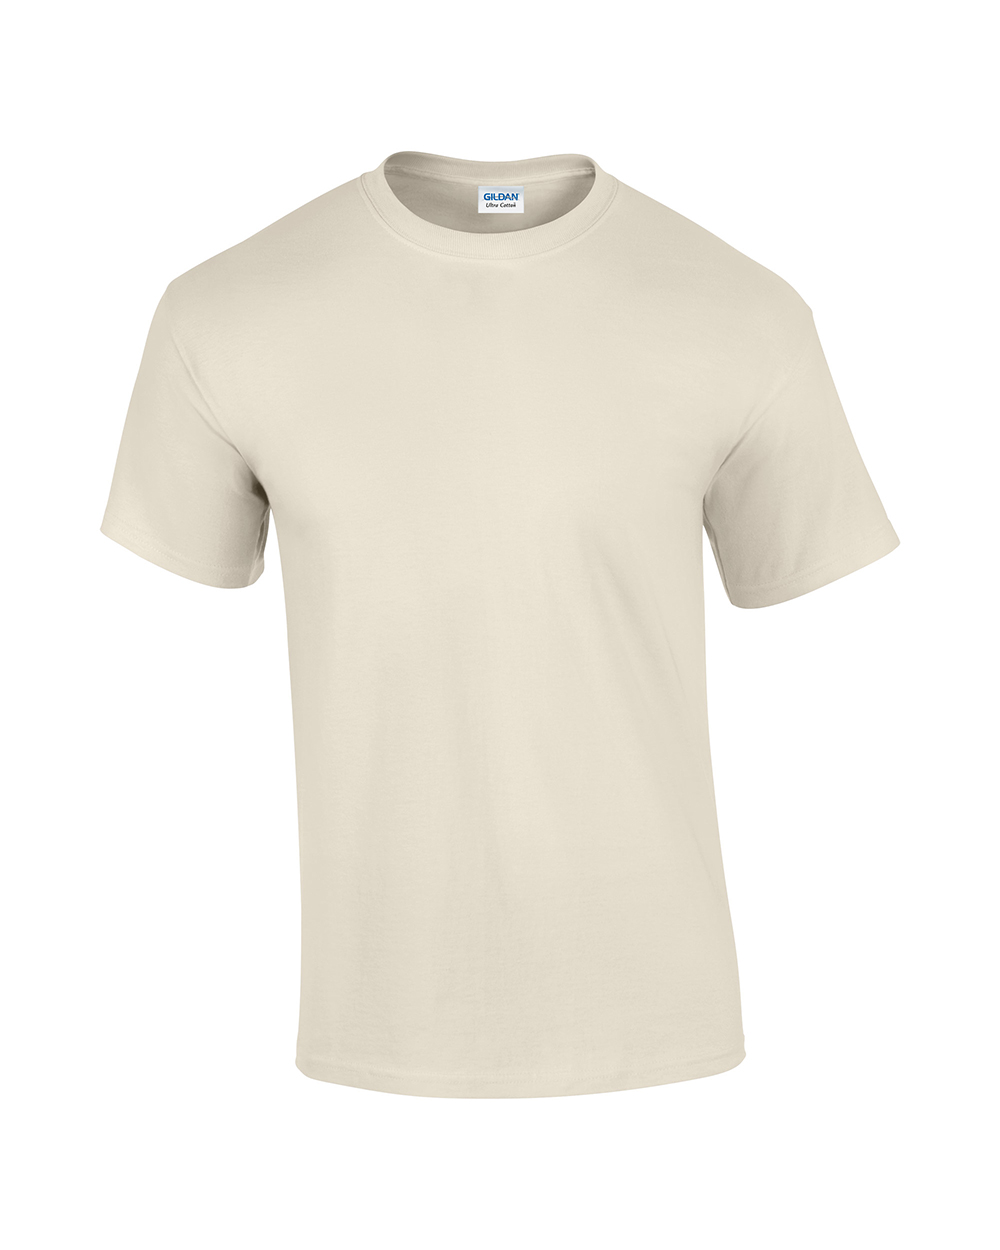 GD002 Gildan Ultra Cotton T Shirt Sizes Sml-XXL